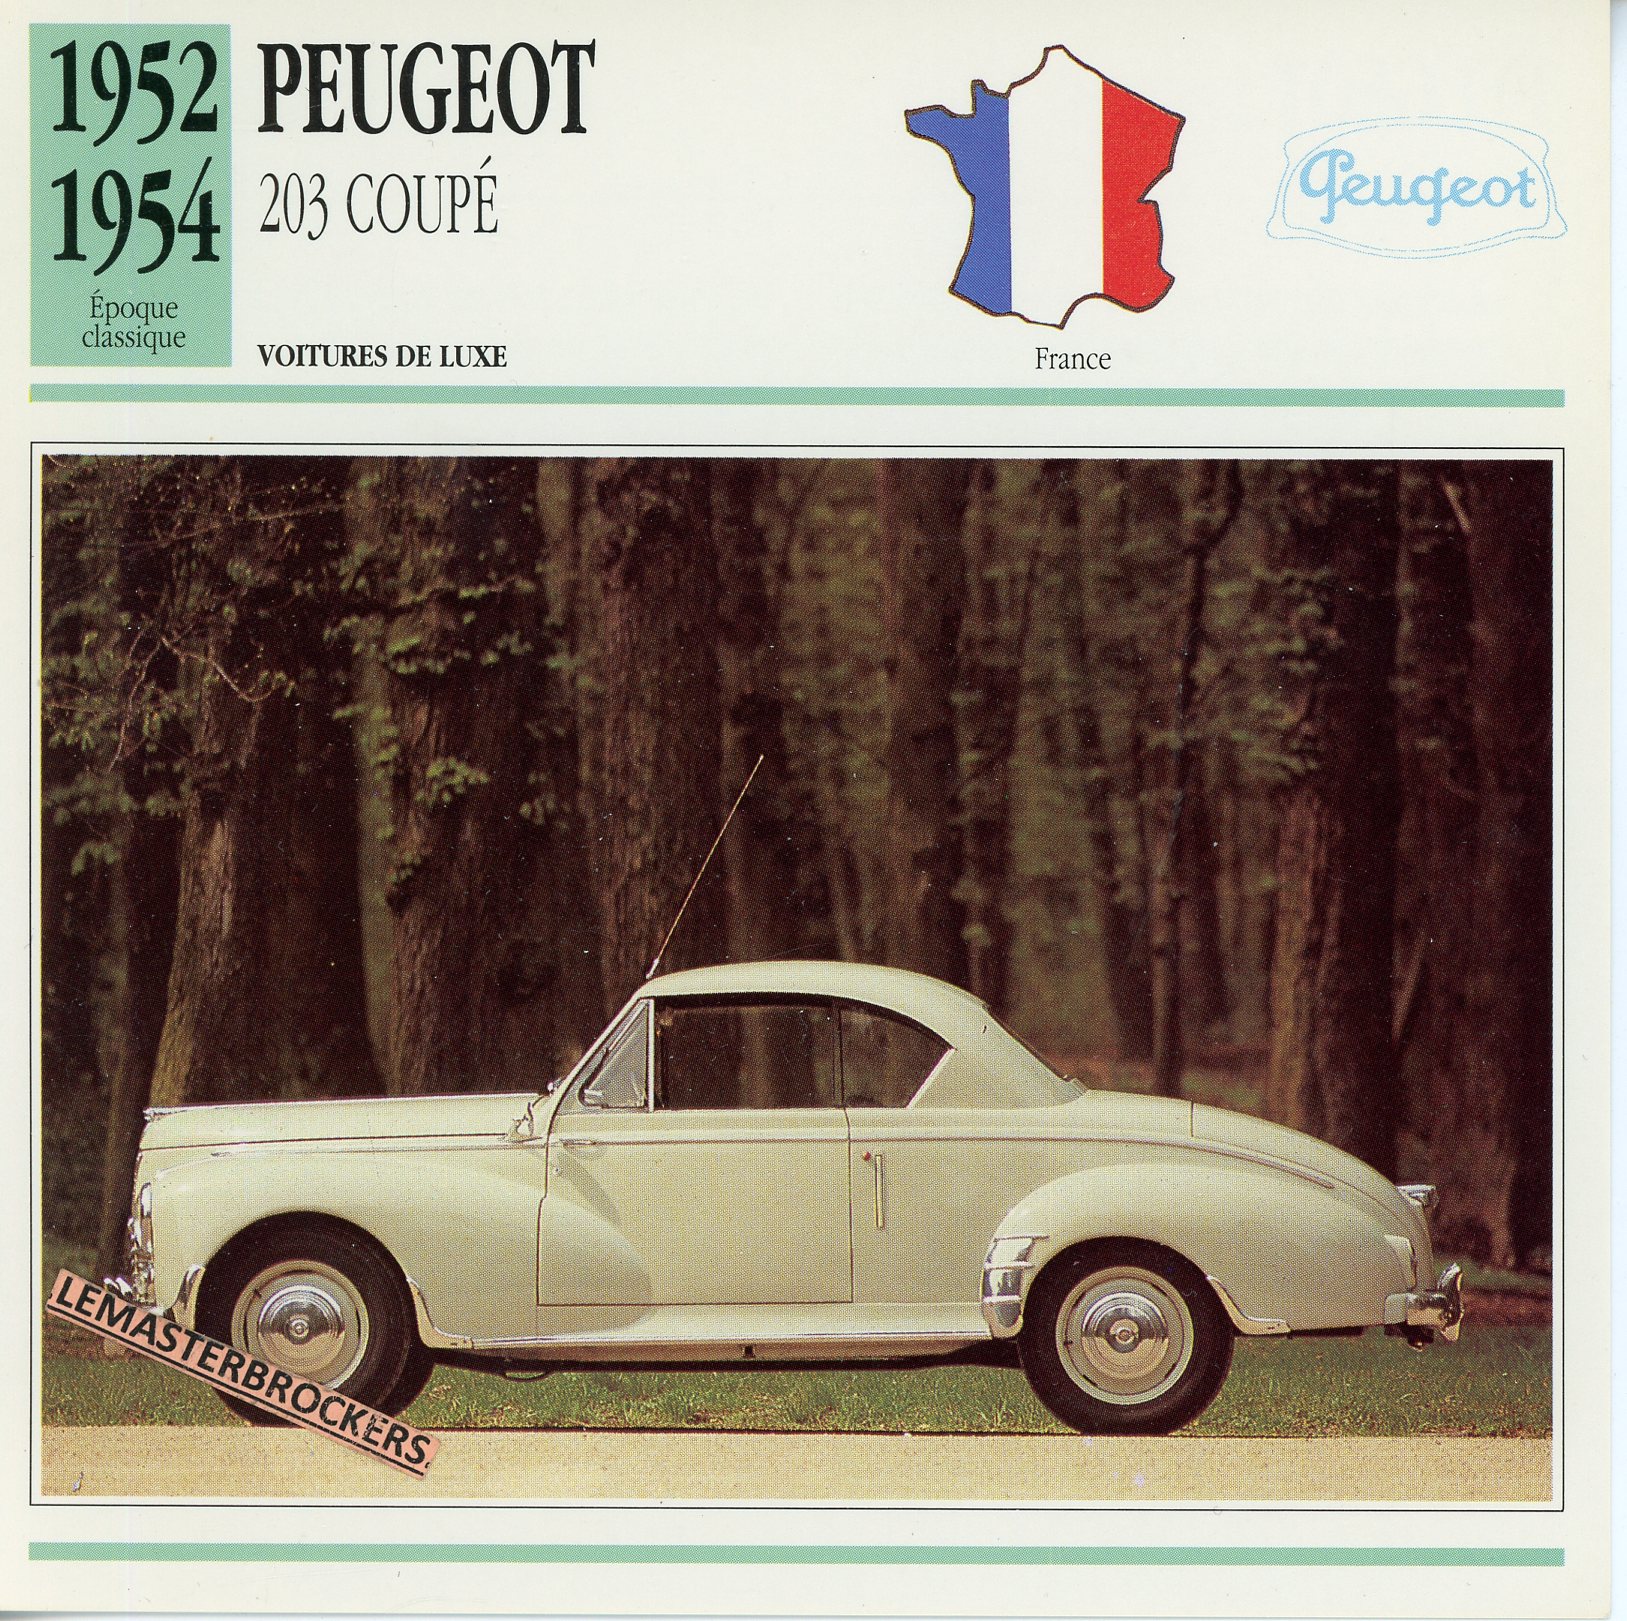 PEUGEOT-203-COUPÉ-1952-1954-FICHE-AUTO-ATLAS-LEMASTERBROCKERS